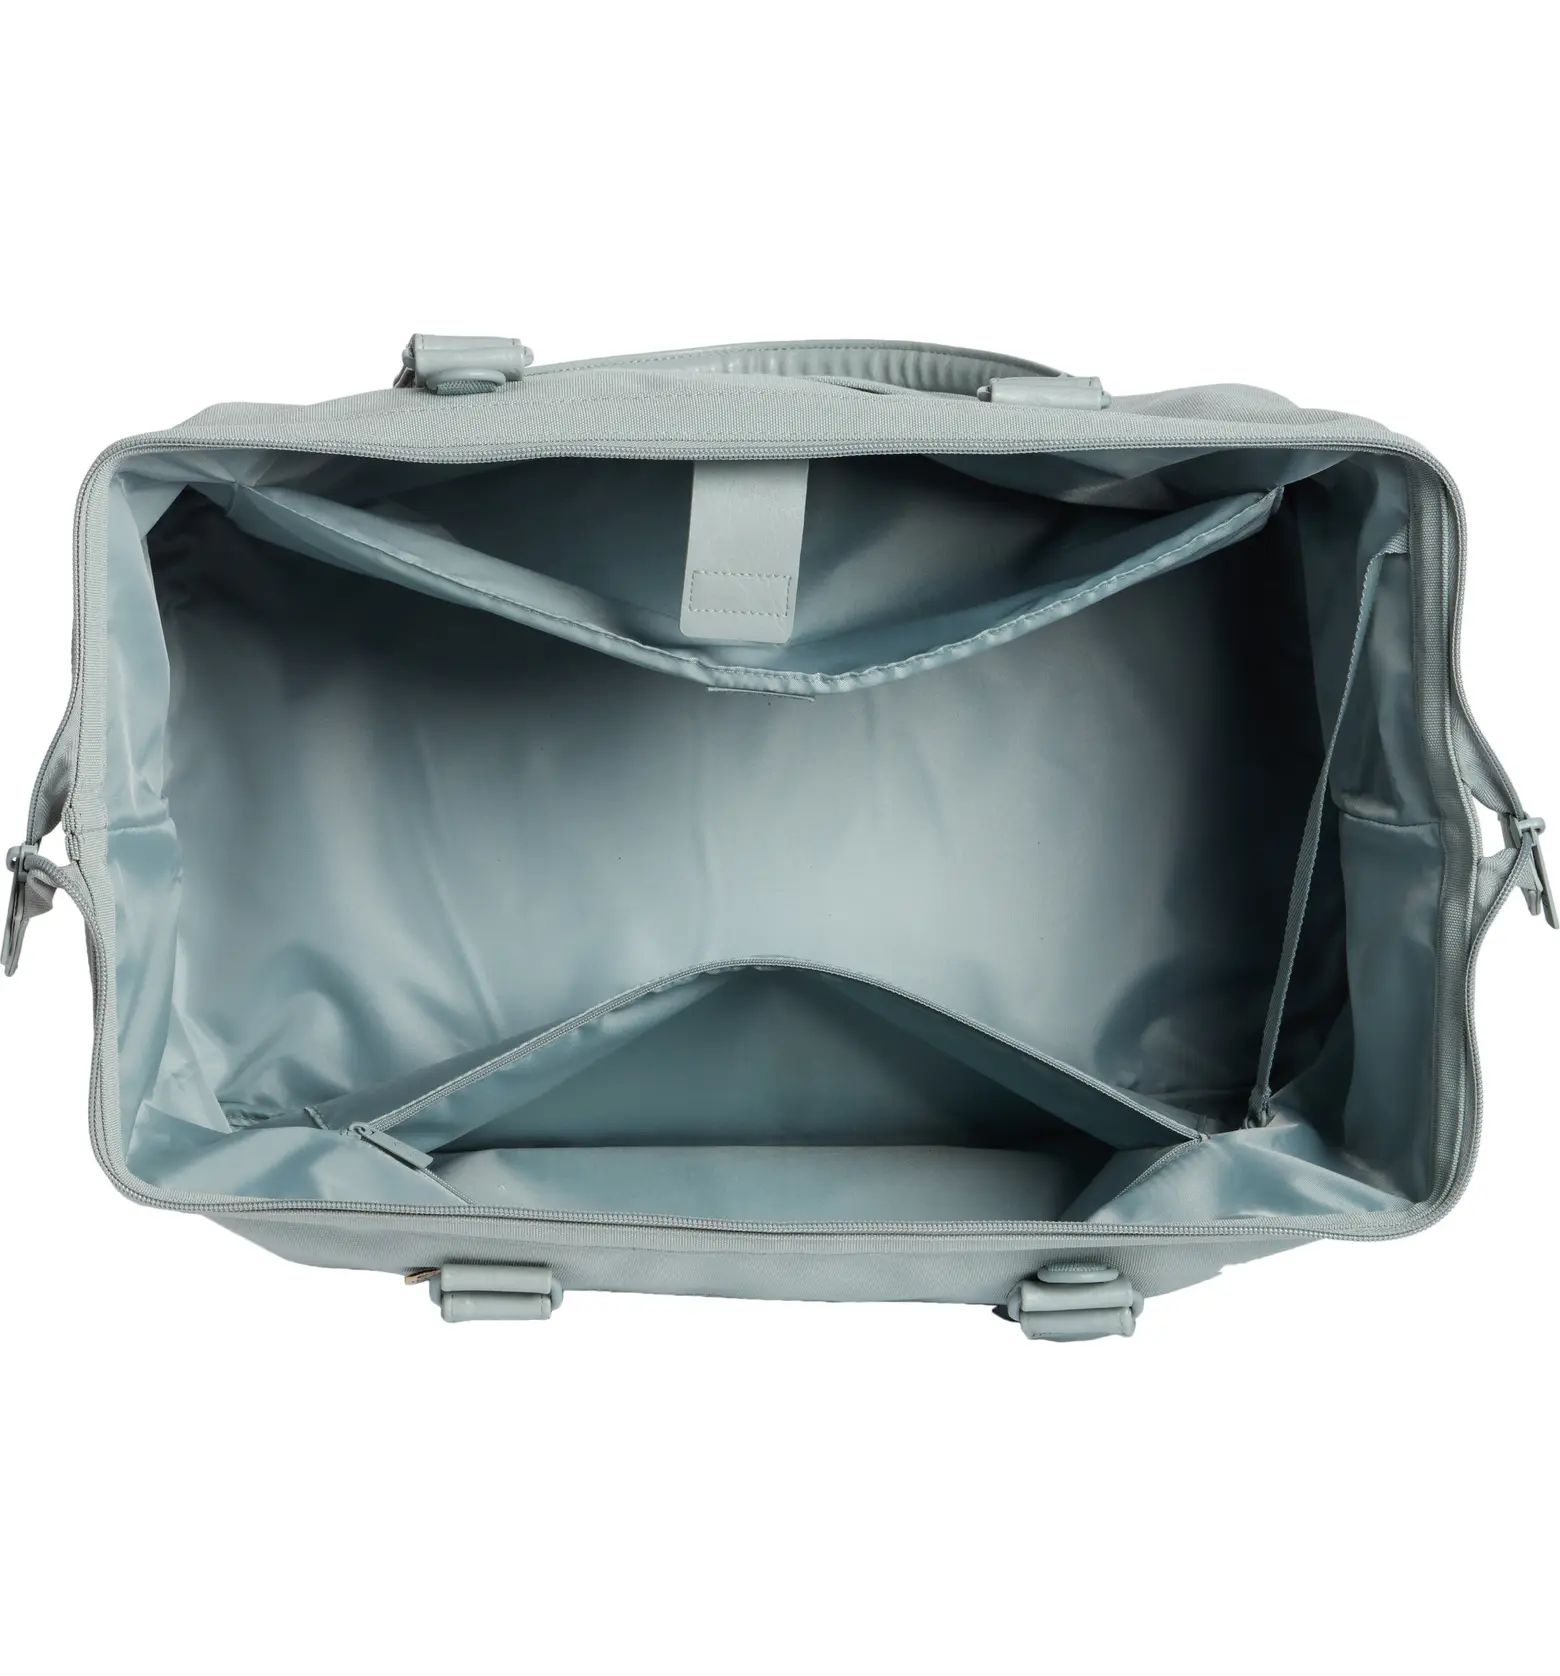 The Weekend Duffle Bag | Nordstrom